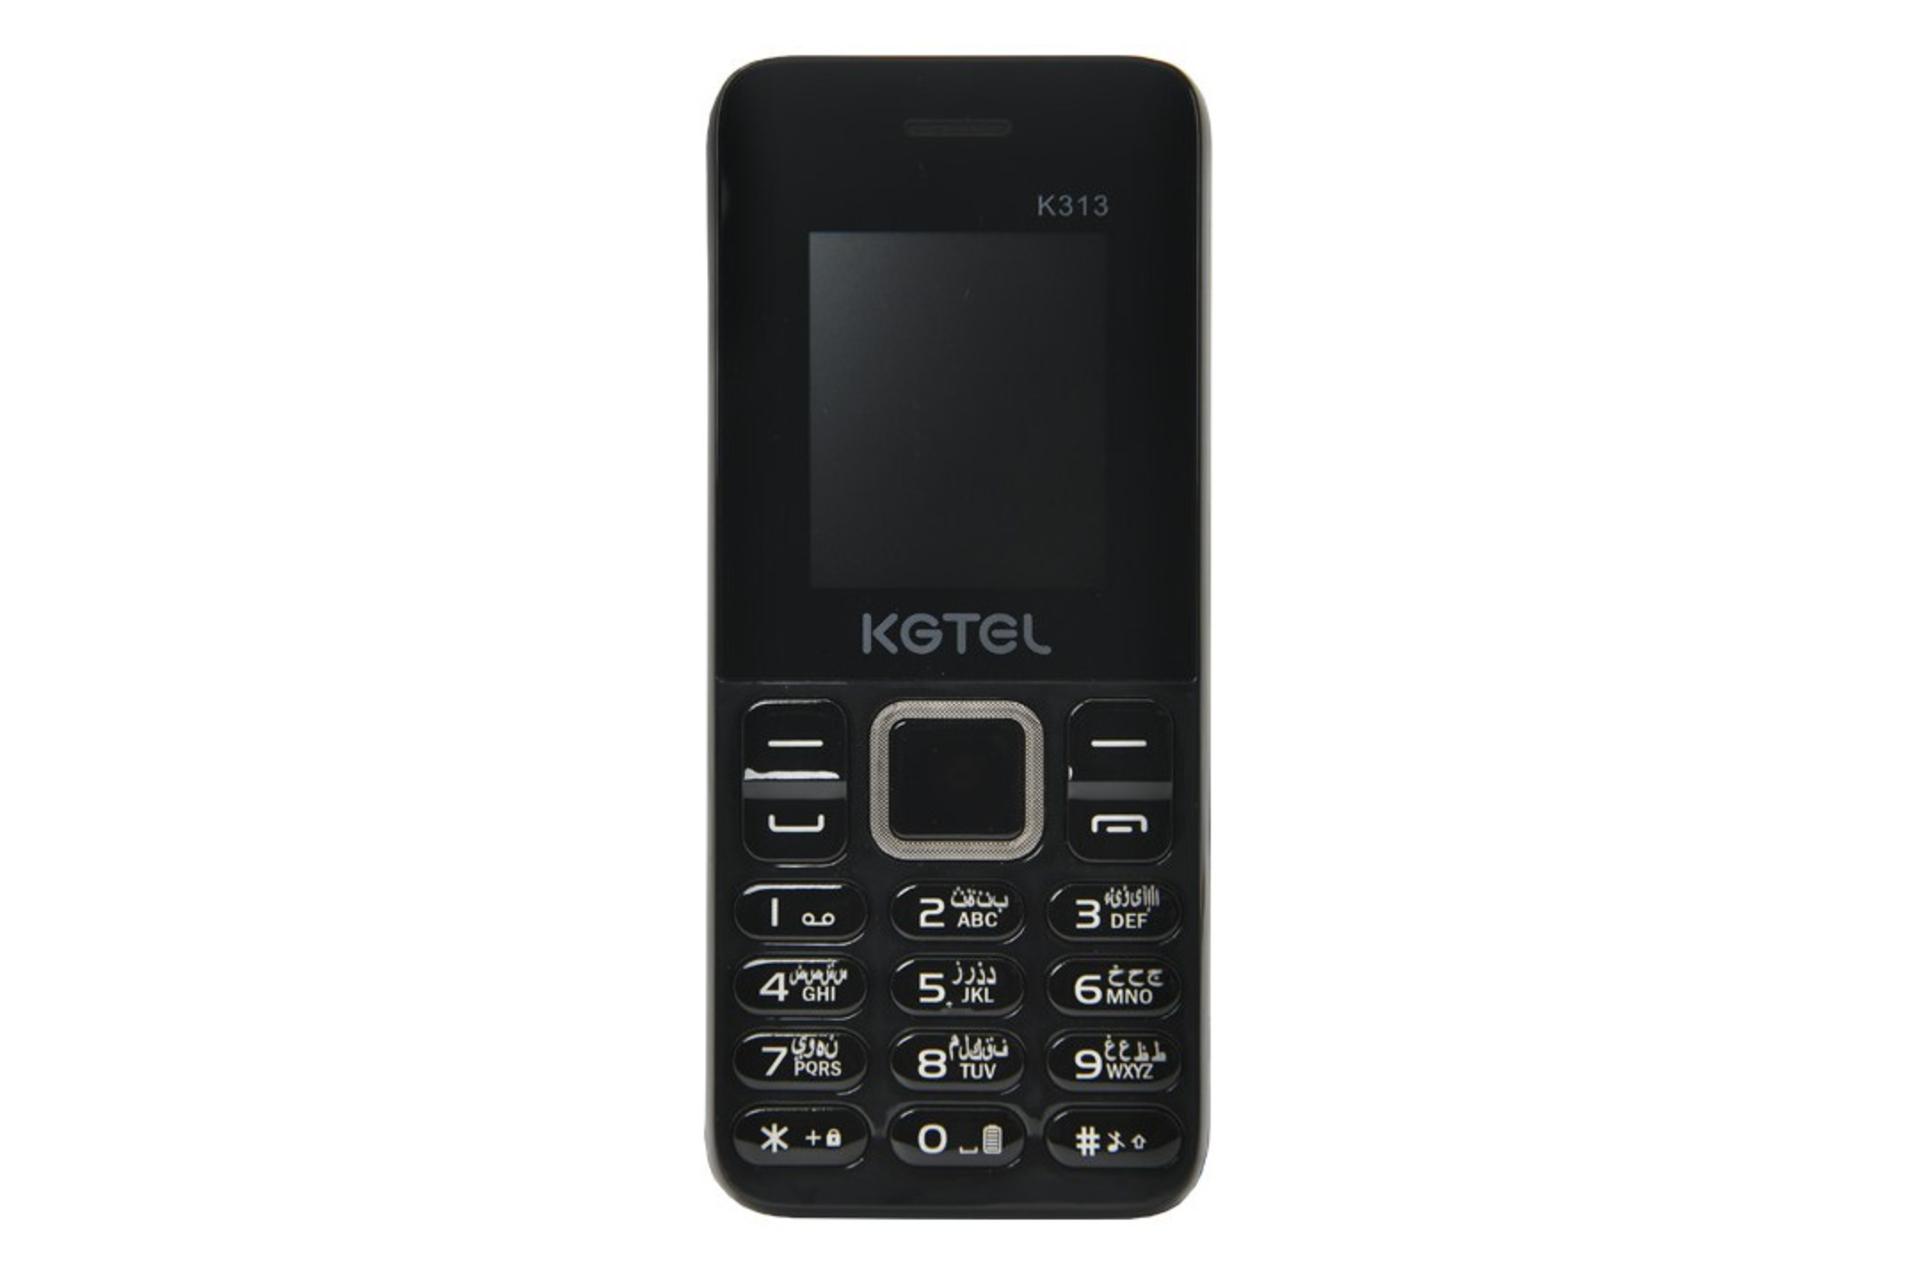 گوشی موبایل کاجیتل KGTEL K313